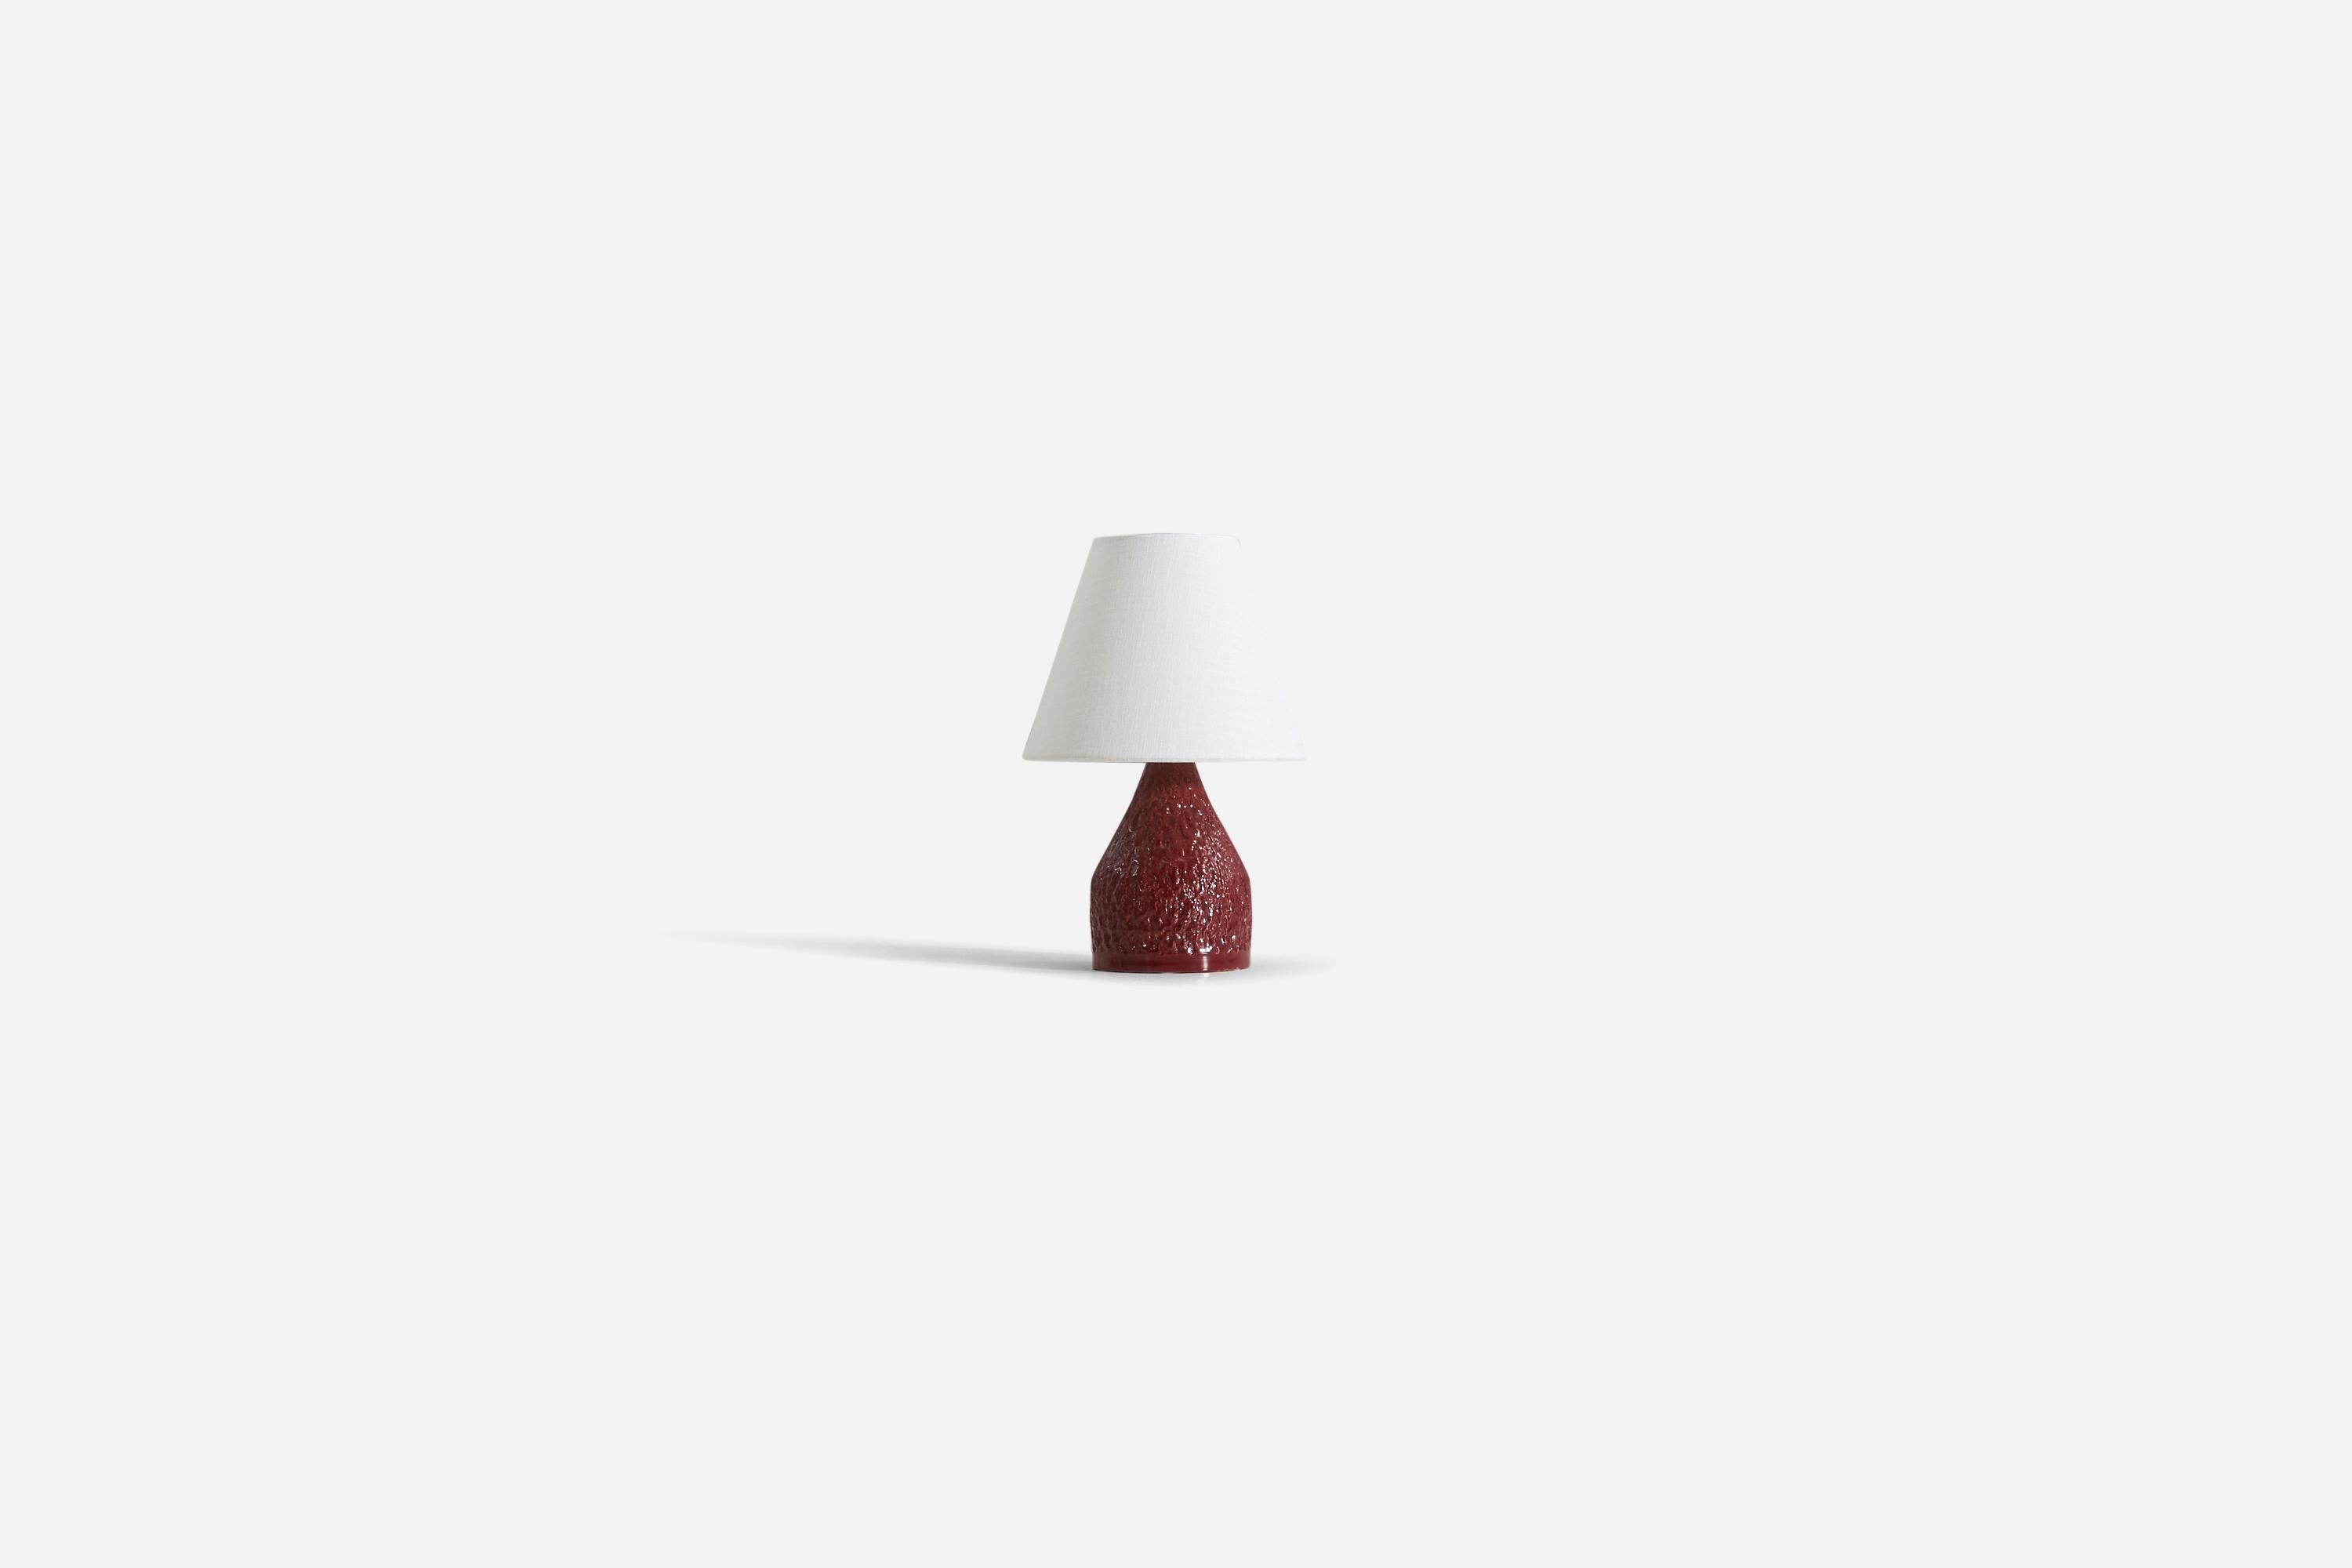 Tischlampe aus rot glasiertem und geritztem Steingut, hergestellt in Schweden, ca. 1960er Jahre.

Verkauft ohne Lampenschirm. 

Die angegebenen Maße beziehen sich auf die Lampe.
Als Referenz. 
Schirm : 4 x 8 x 6,5
Lampe mit Schirm : 12,25 x 8